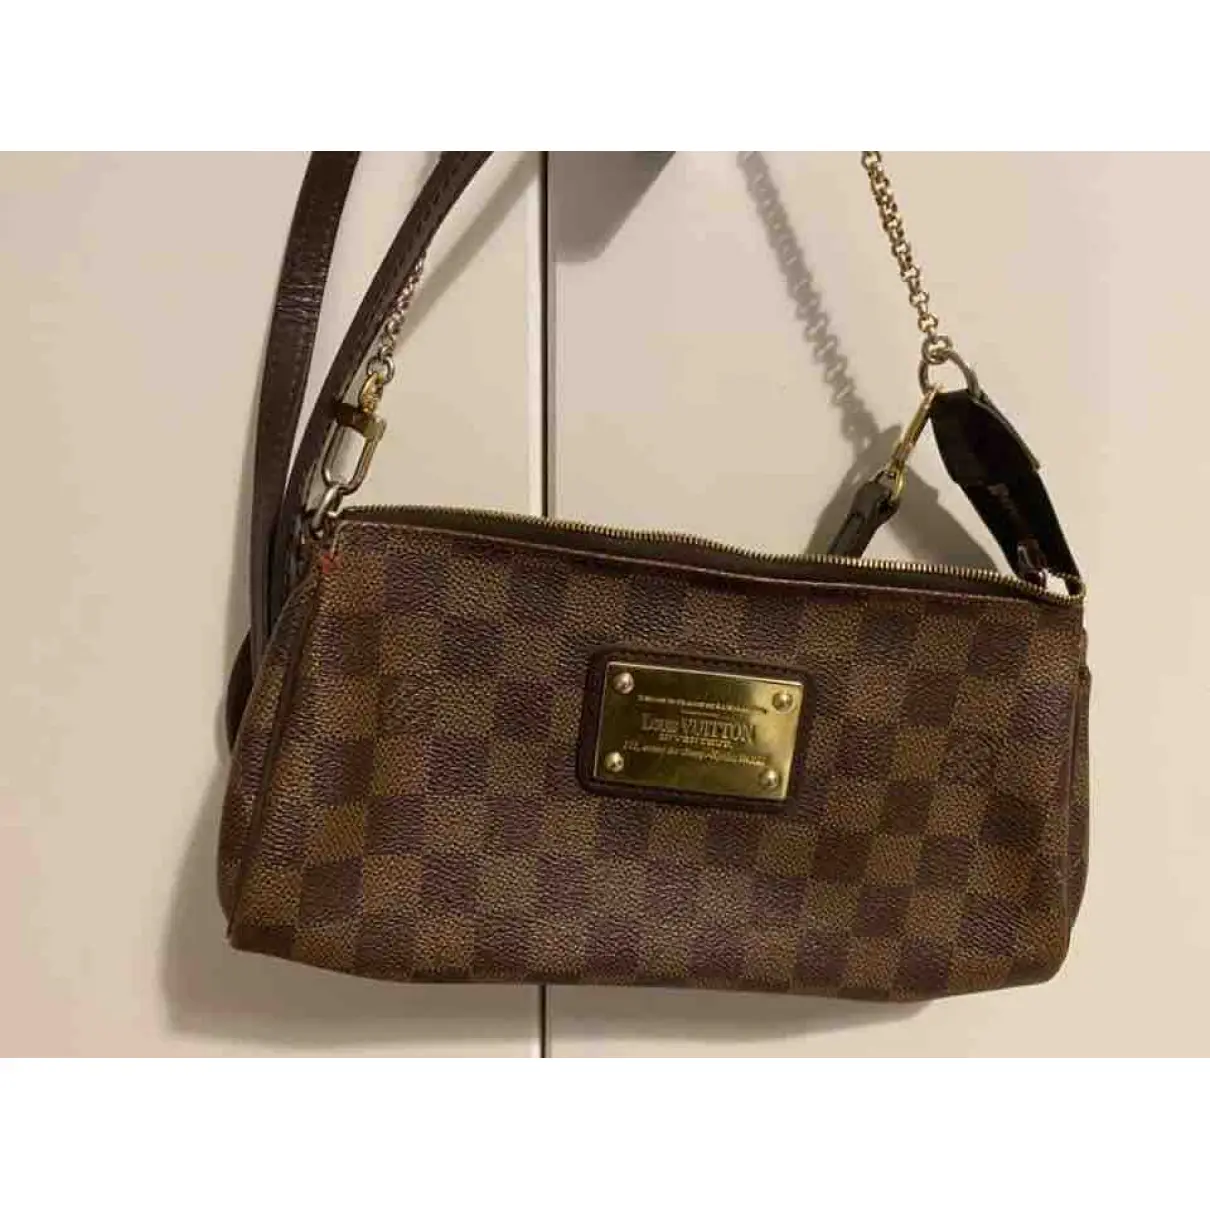 Buy Louis Vuitton Eva cloth handbag online